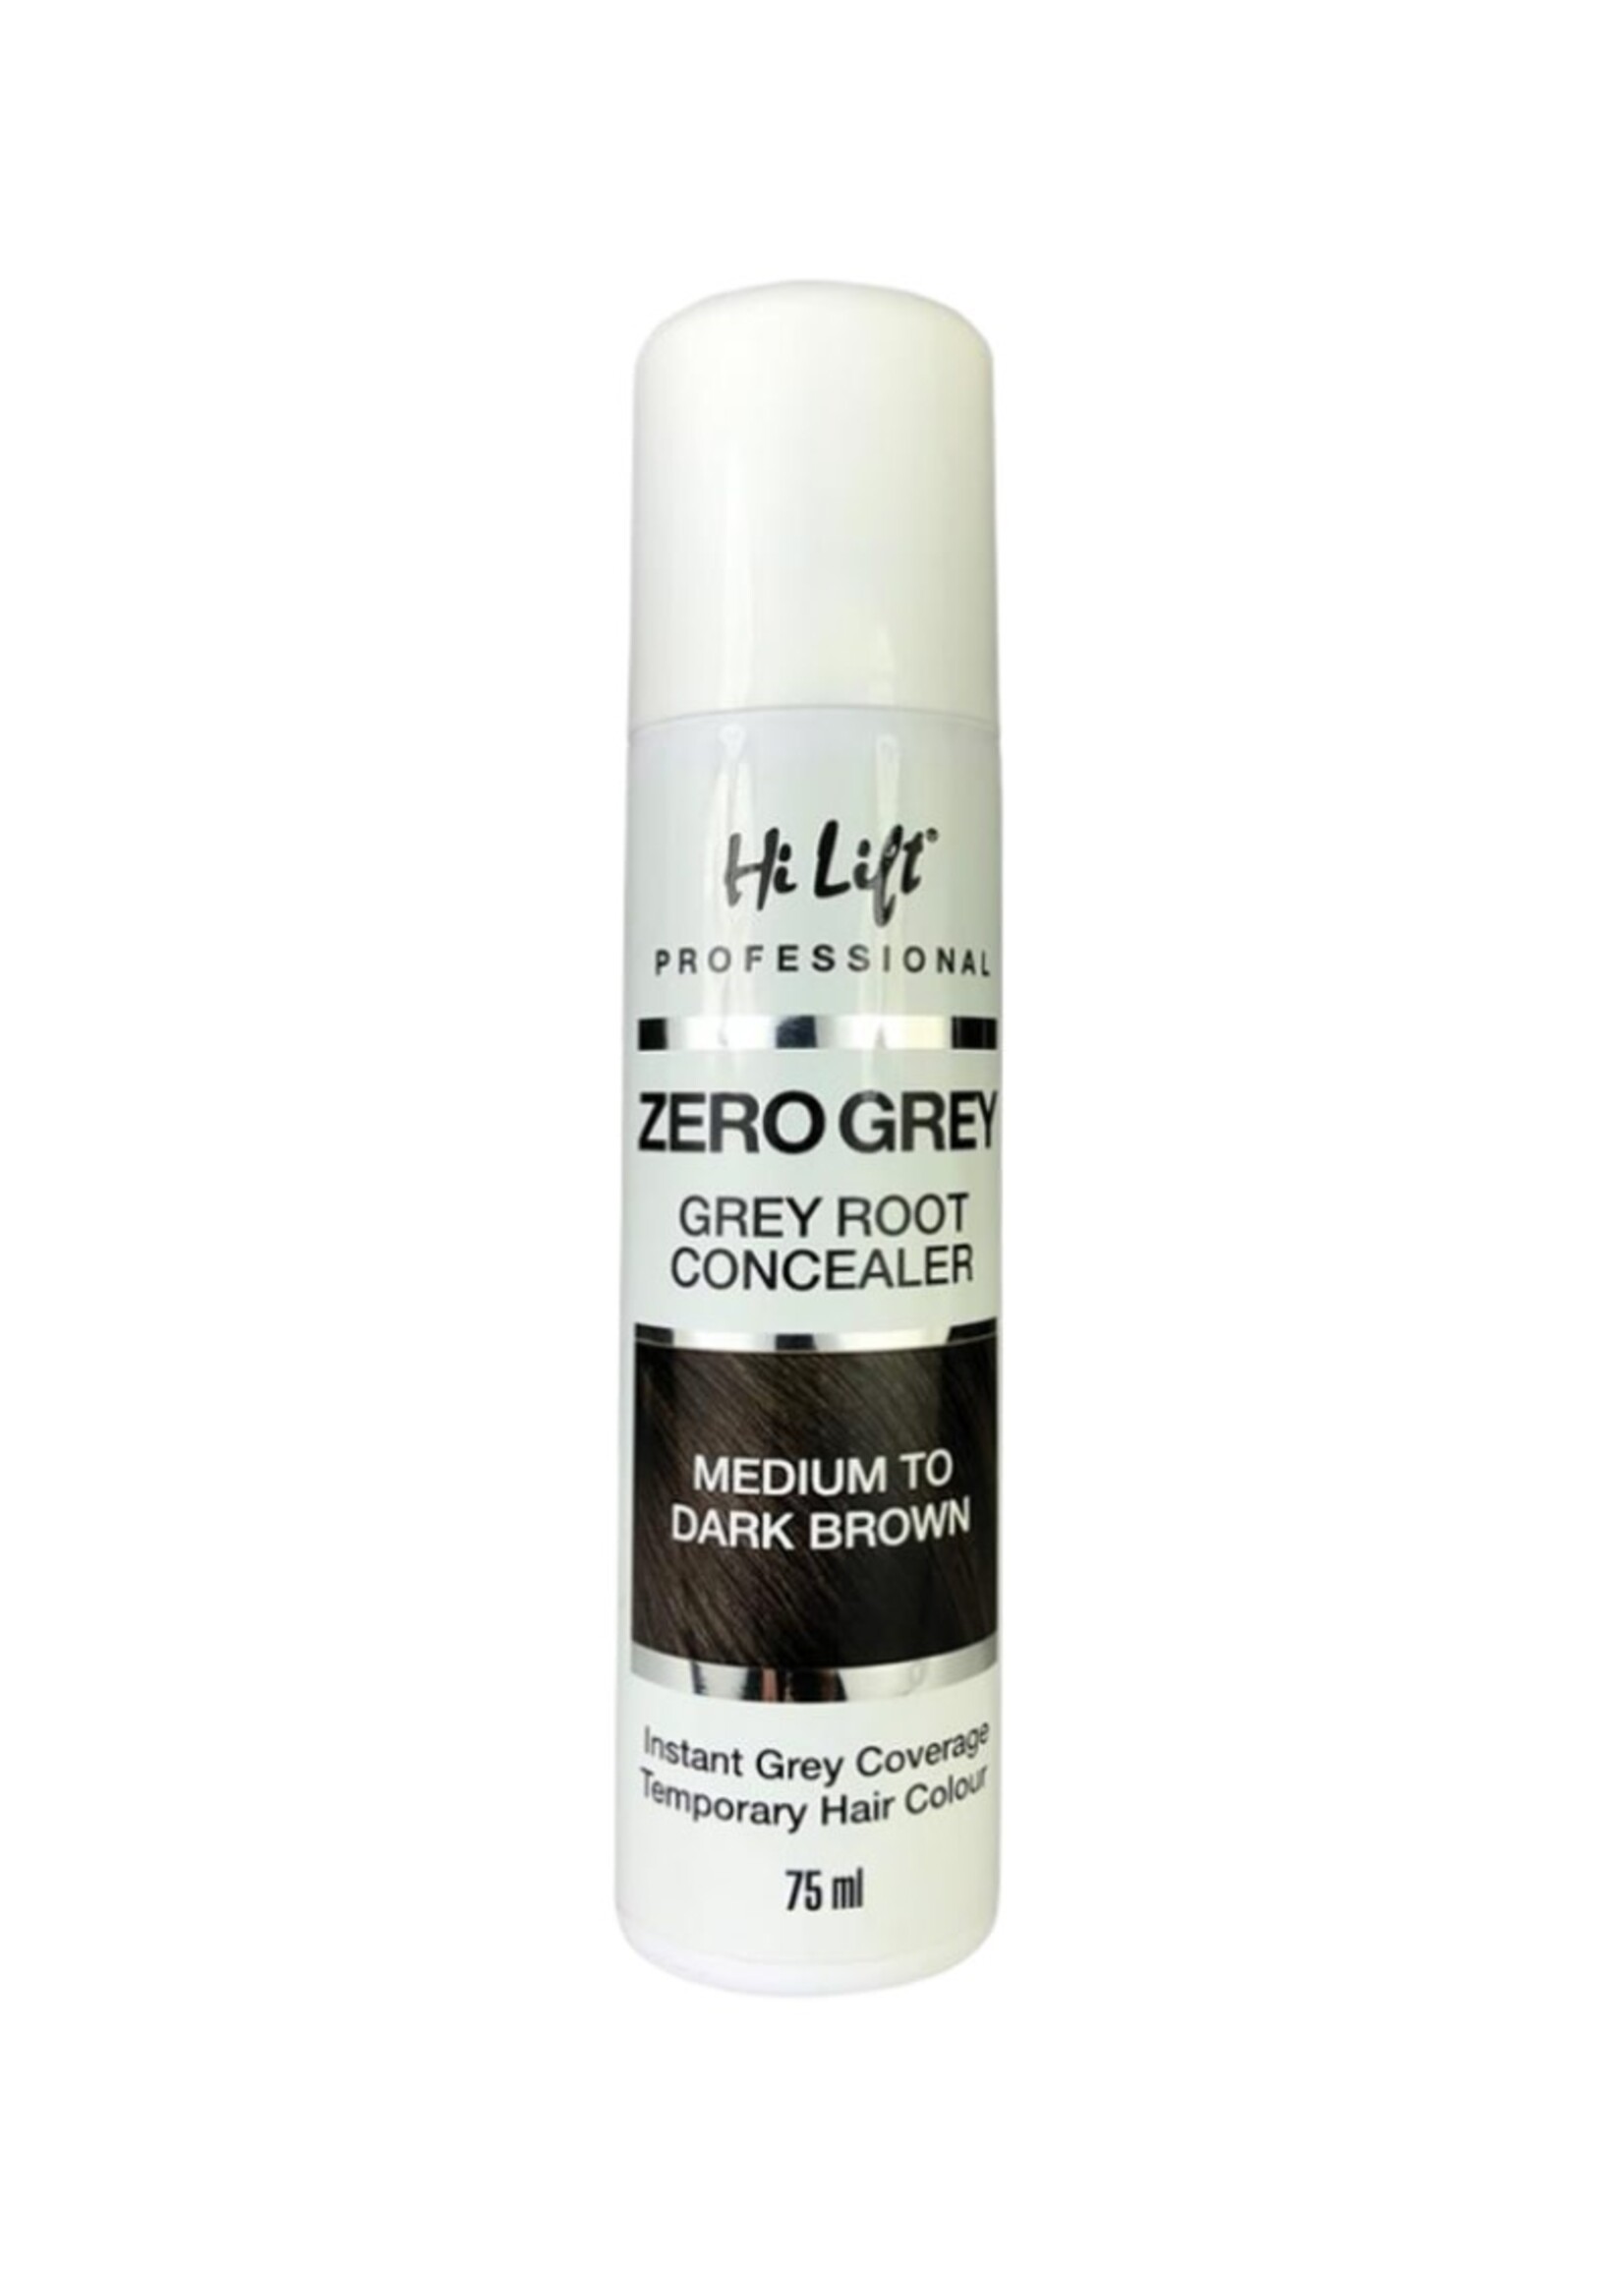 Hi Lift Hi Lift Zero Grey Root Concealer - Medium to Dark Brown 75ml